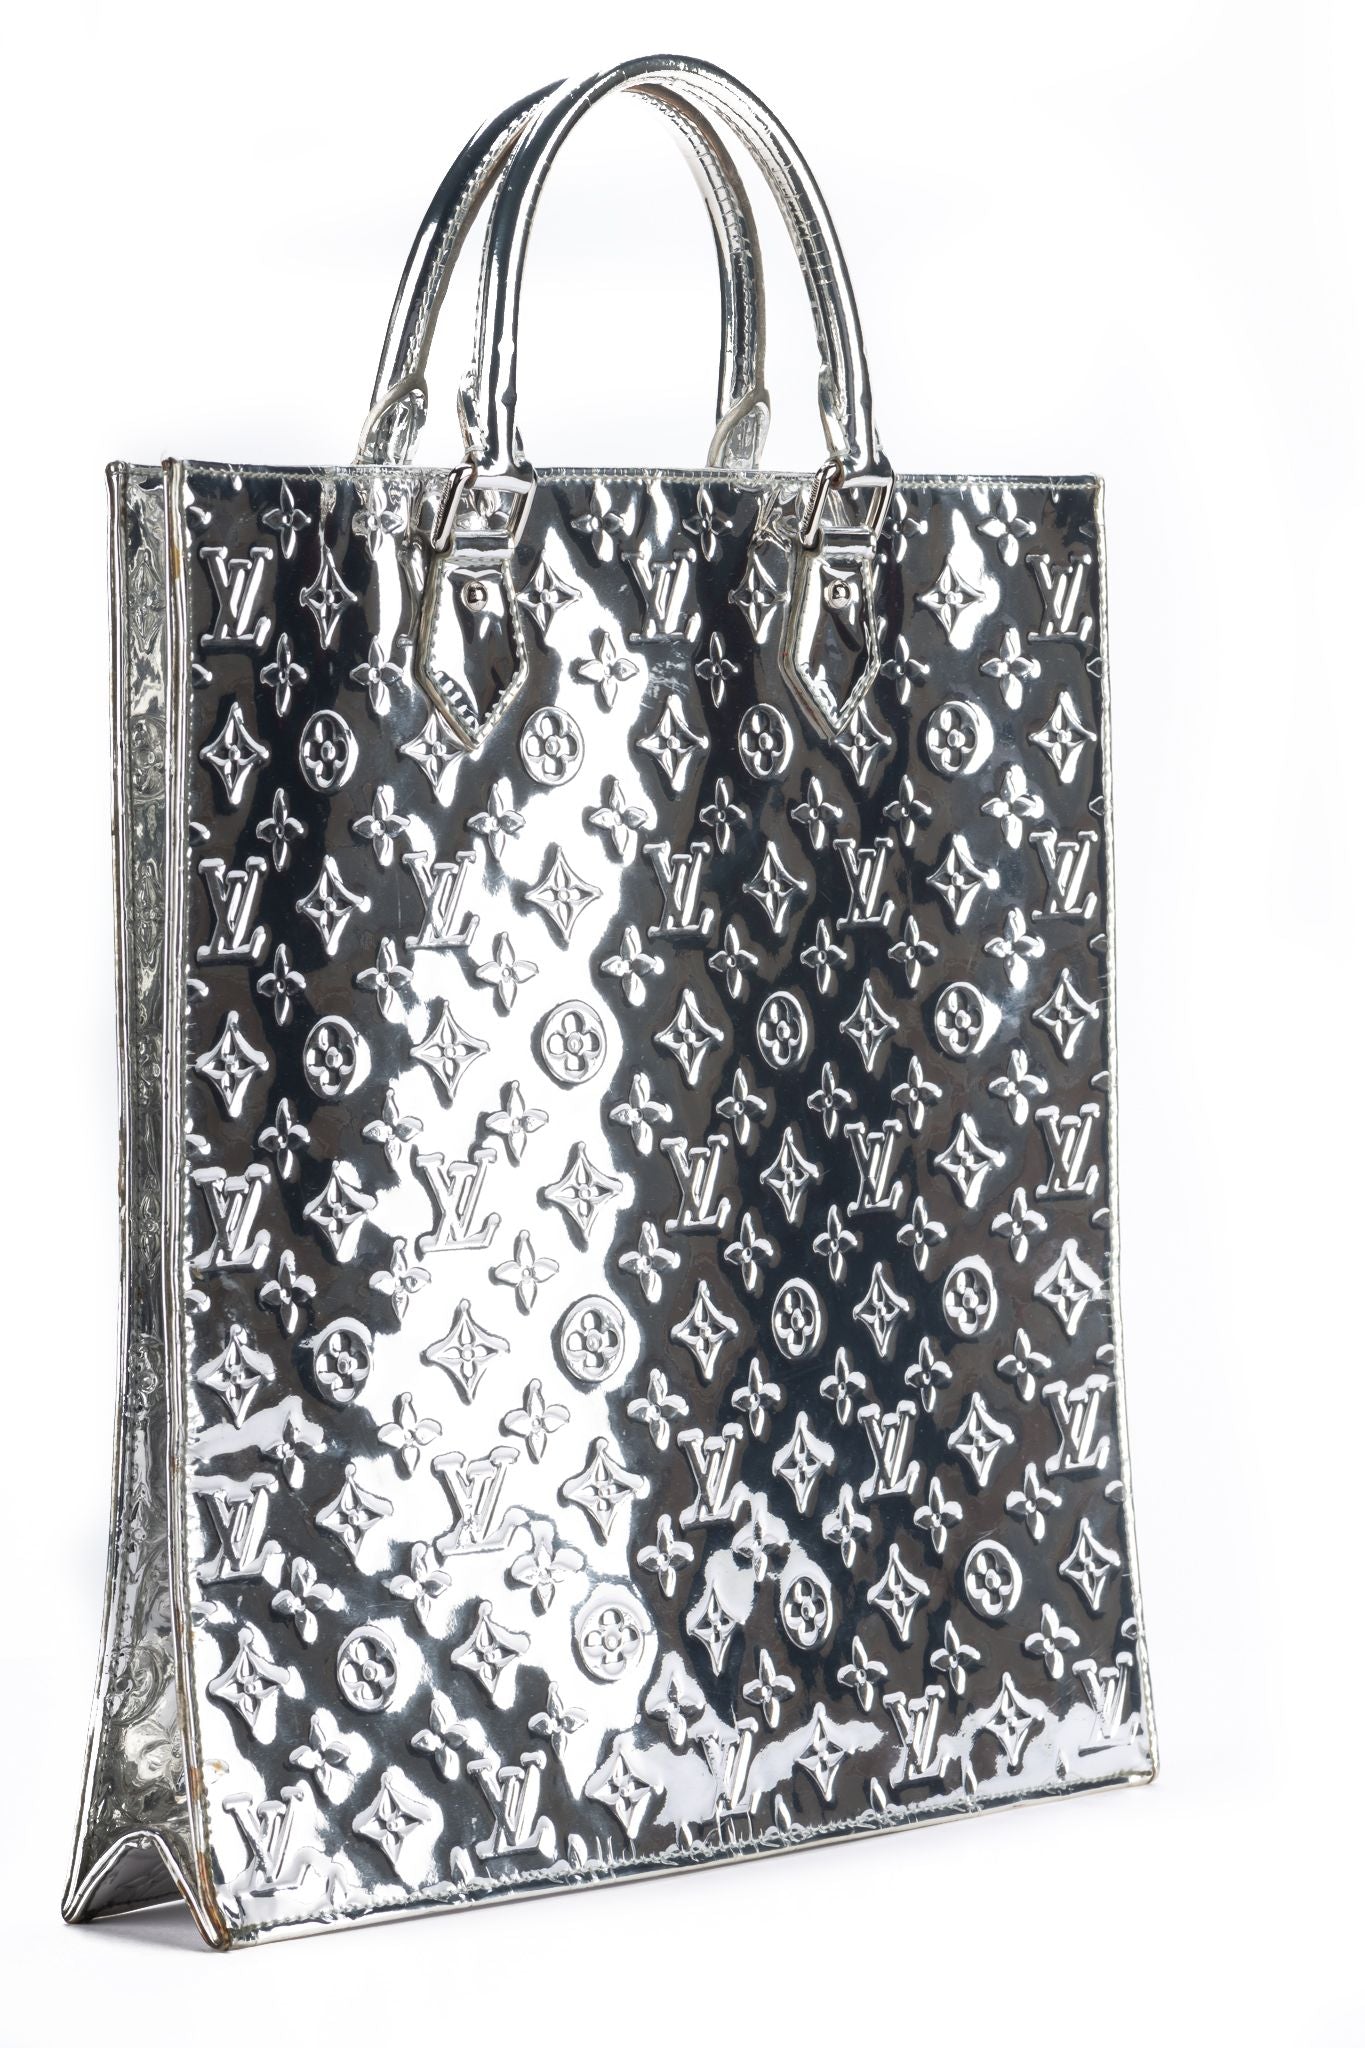 Louis Vuitton Sac Plat - Good or Bag